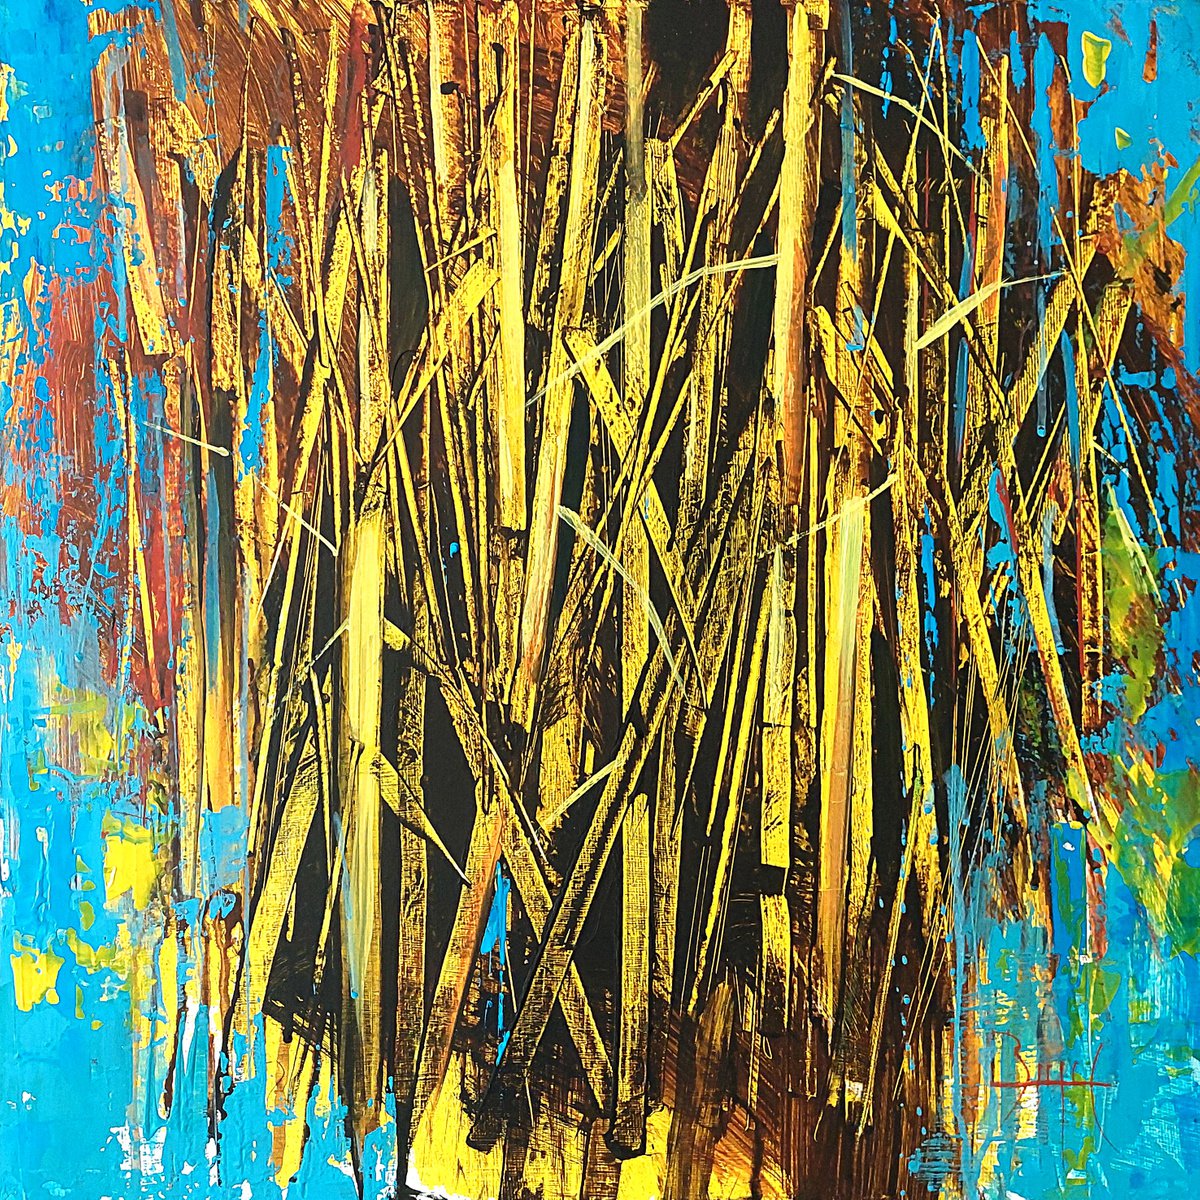 Yellow reed by Ovidiu Buzec